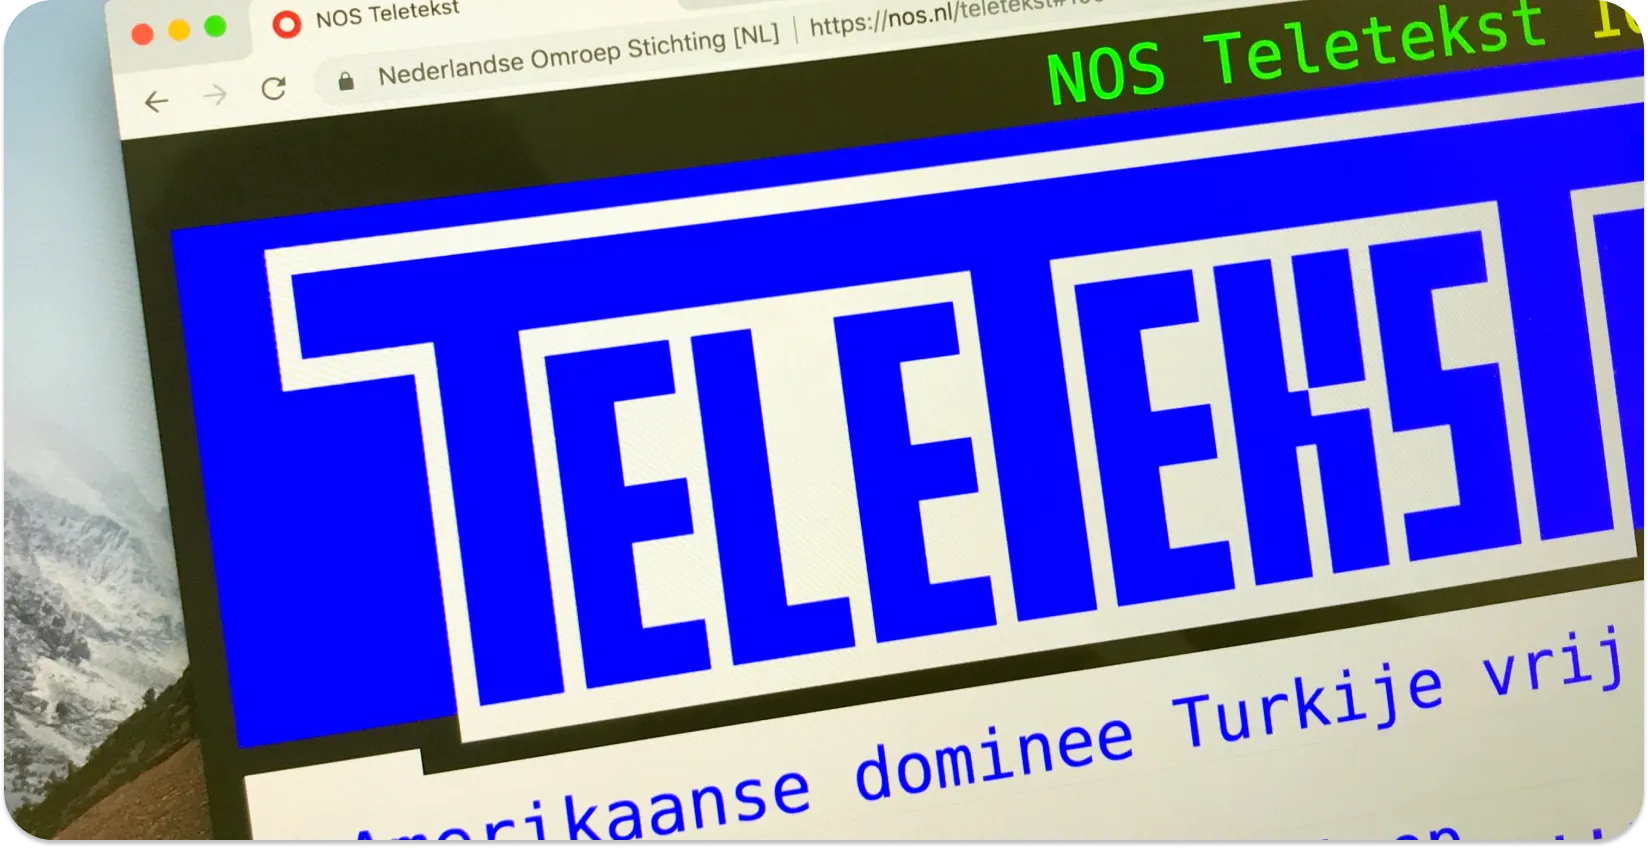 Een computerscherm met Teletekst-ondertiteling met nieuwskoppen, als voorbeeld van het teletekst-ondertitelingsformaat.